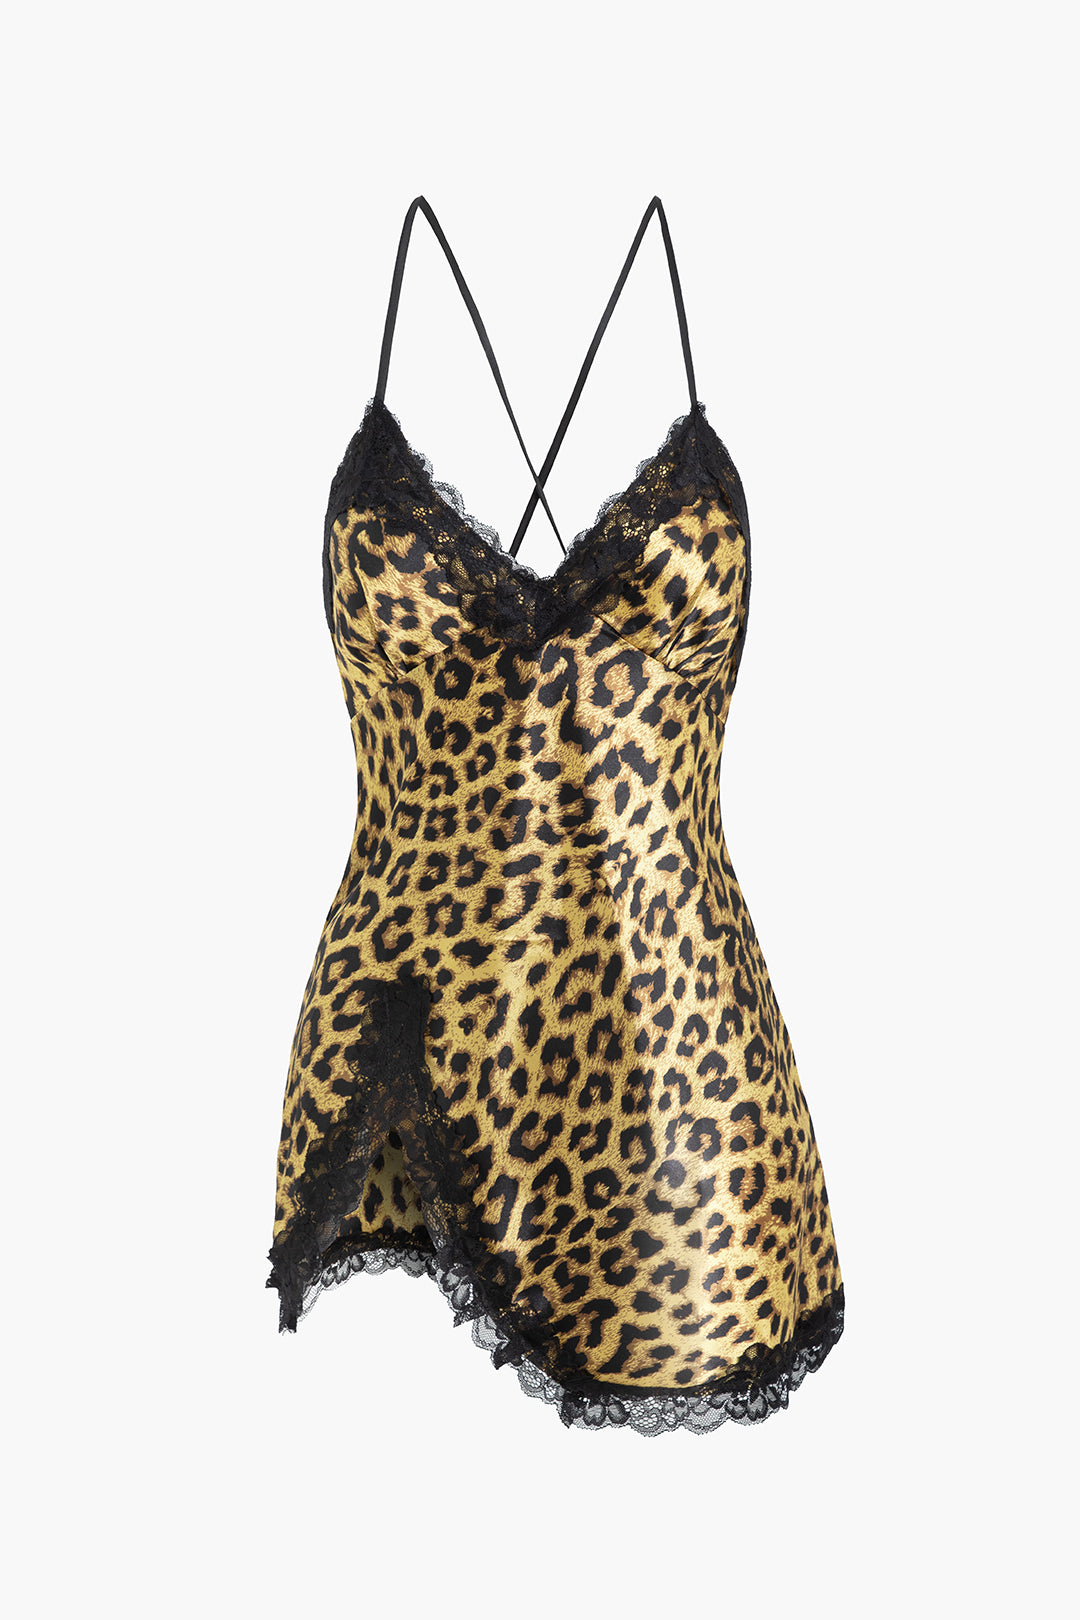 Leopard Print Lace Trim Dress Lingerie